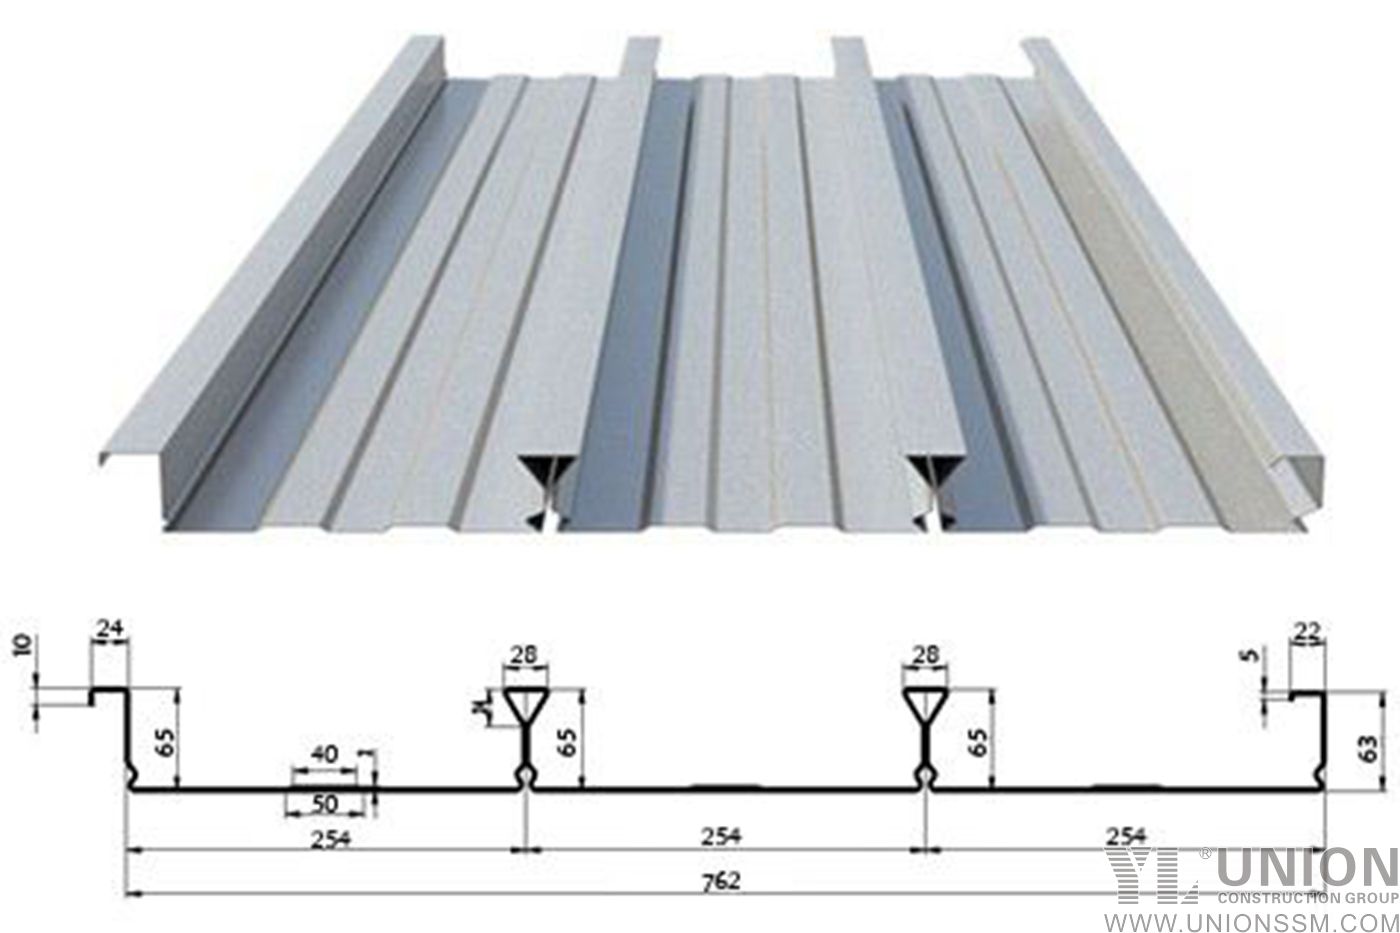 YL65-254-760 可彎折型材複合裝飾板